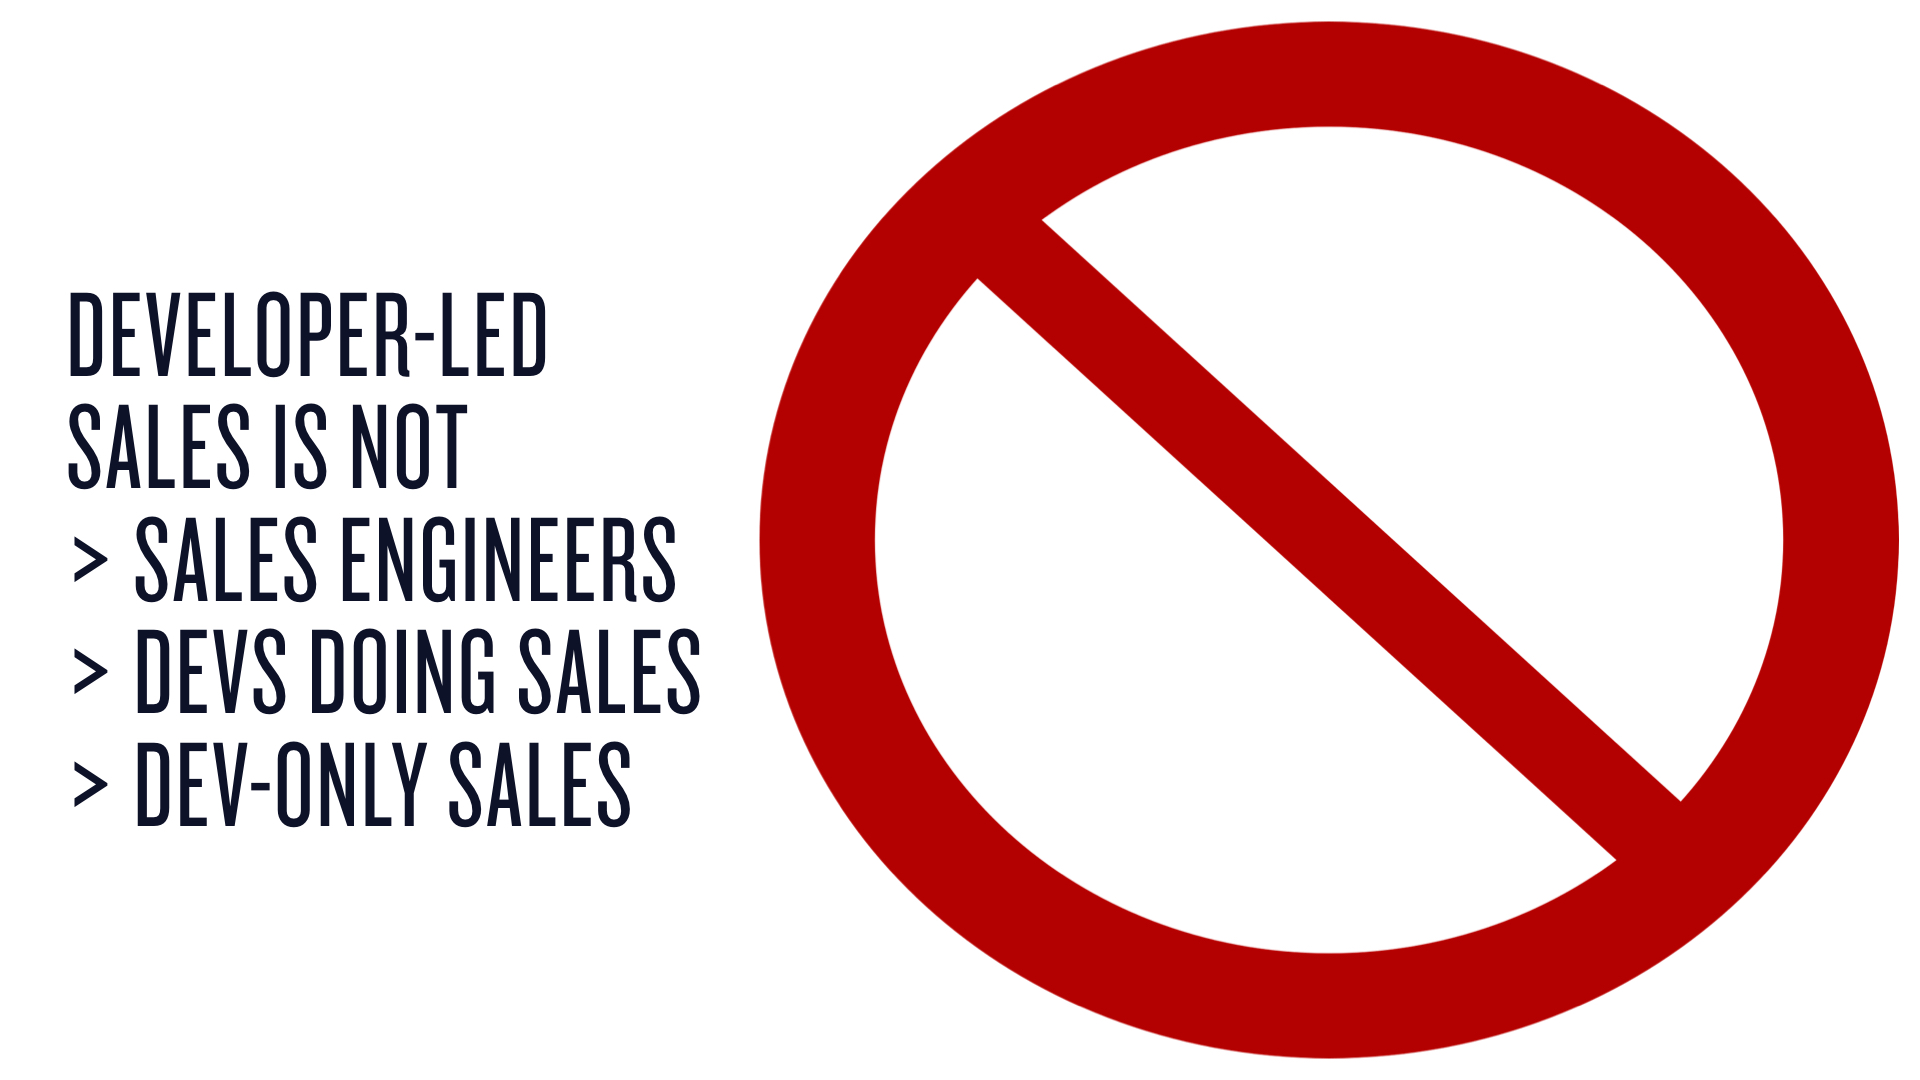 Dev-led sales is not sales engineering or dev-only sales.